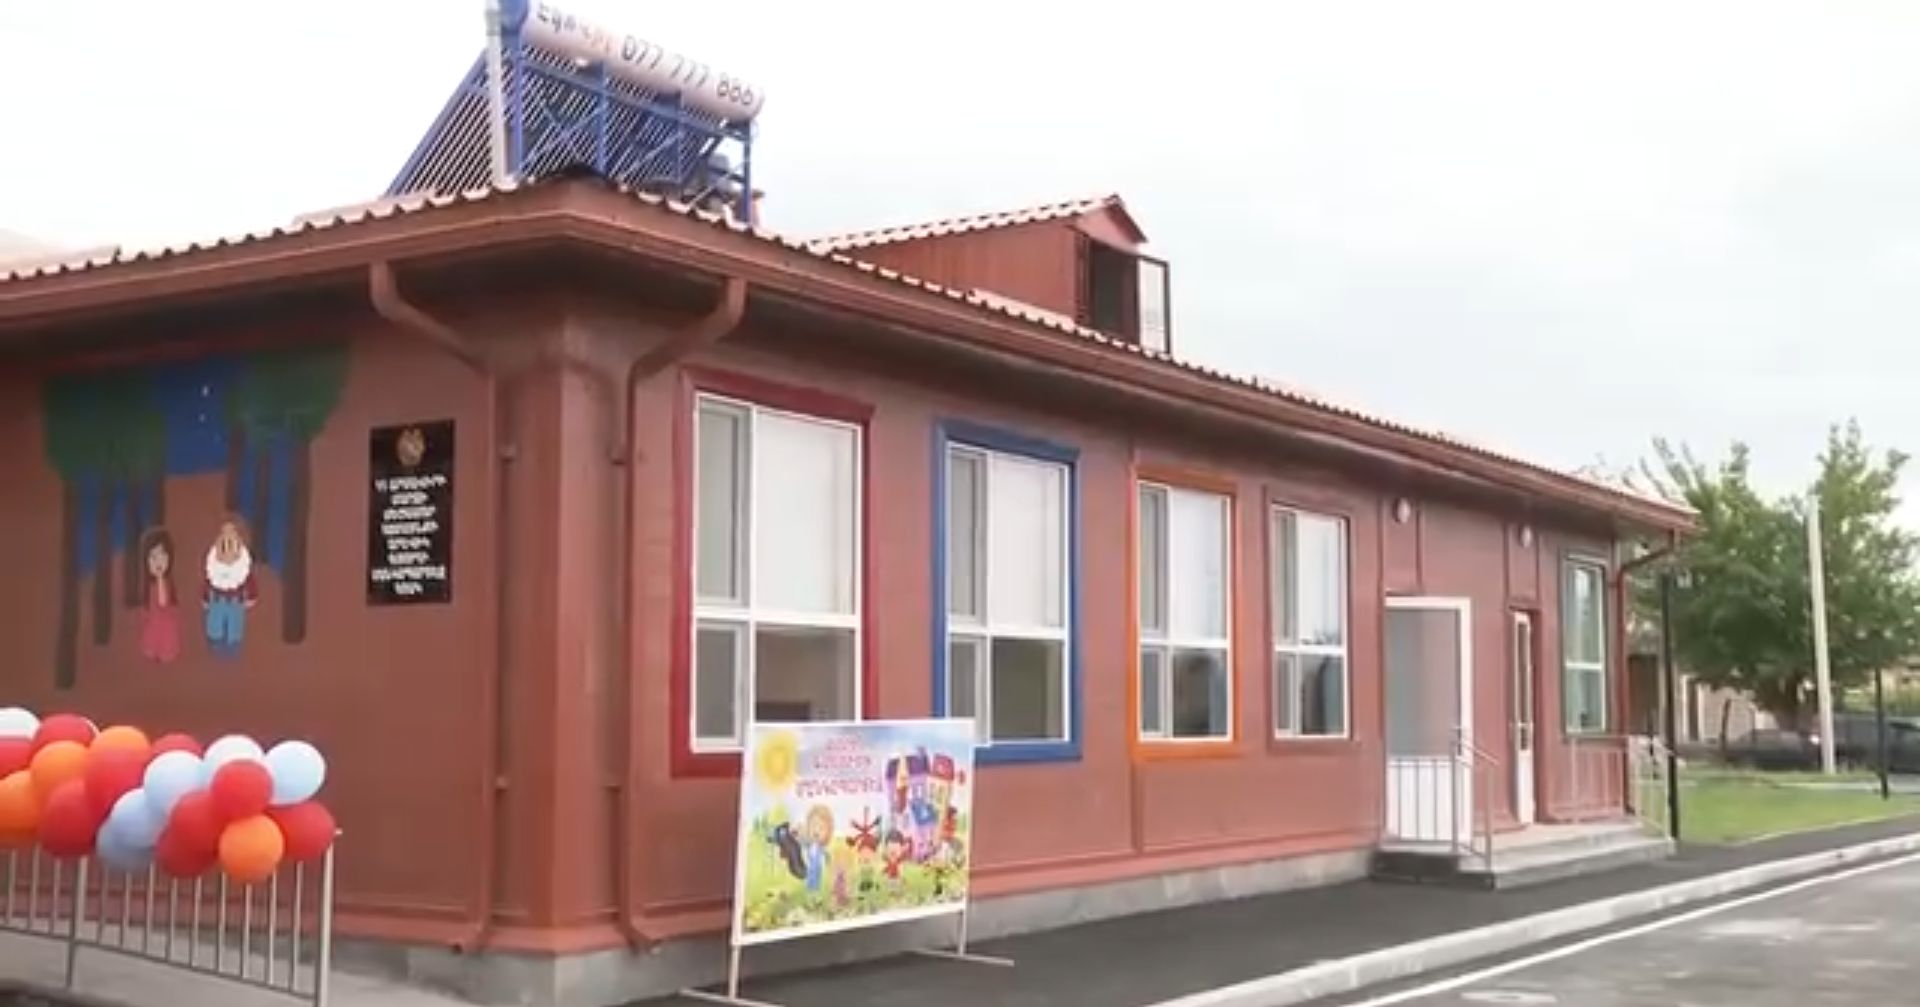 Մեծամոր համայնքի Արևիկ բնակավայրում արդեն մեկ ամիս է գործում է նորակառույց մոդուլային մանկապարտեզը. Փաշինյան (տեսանյութ)